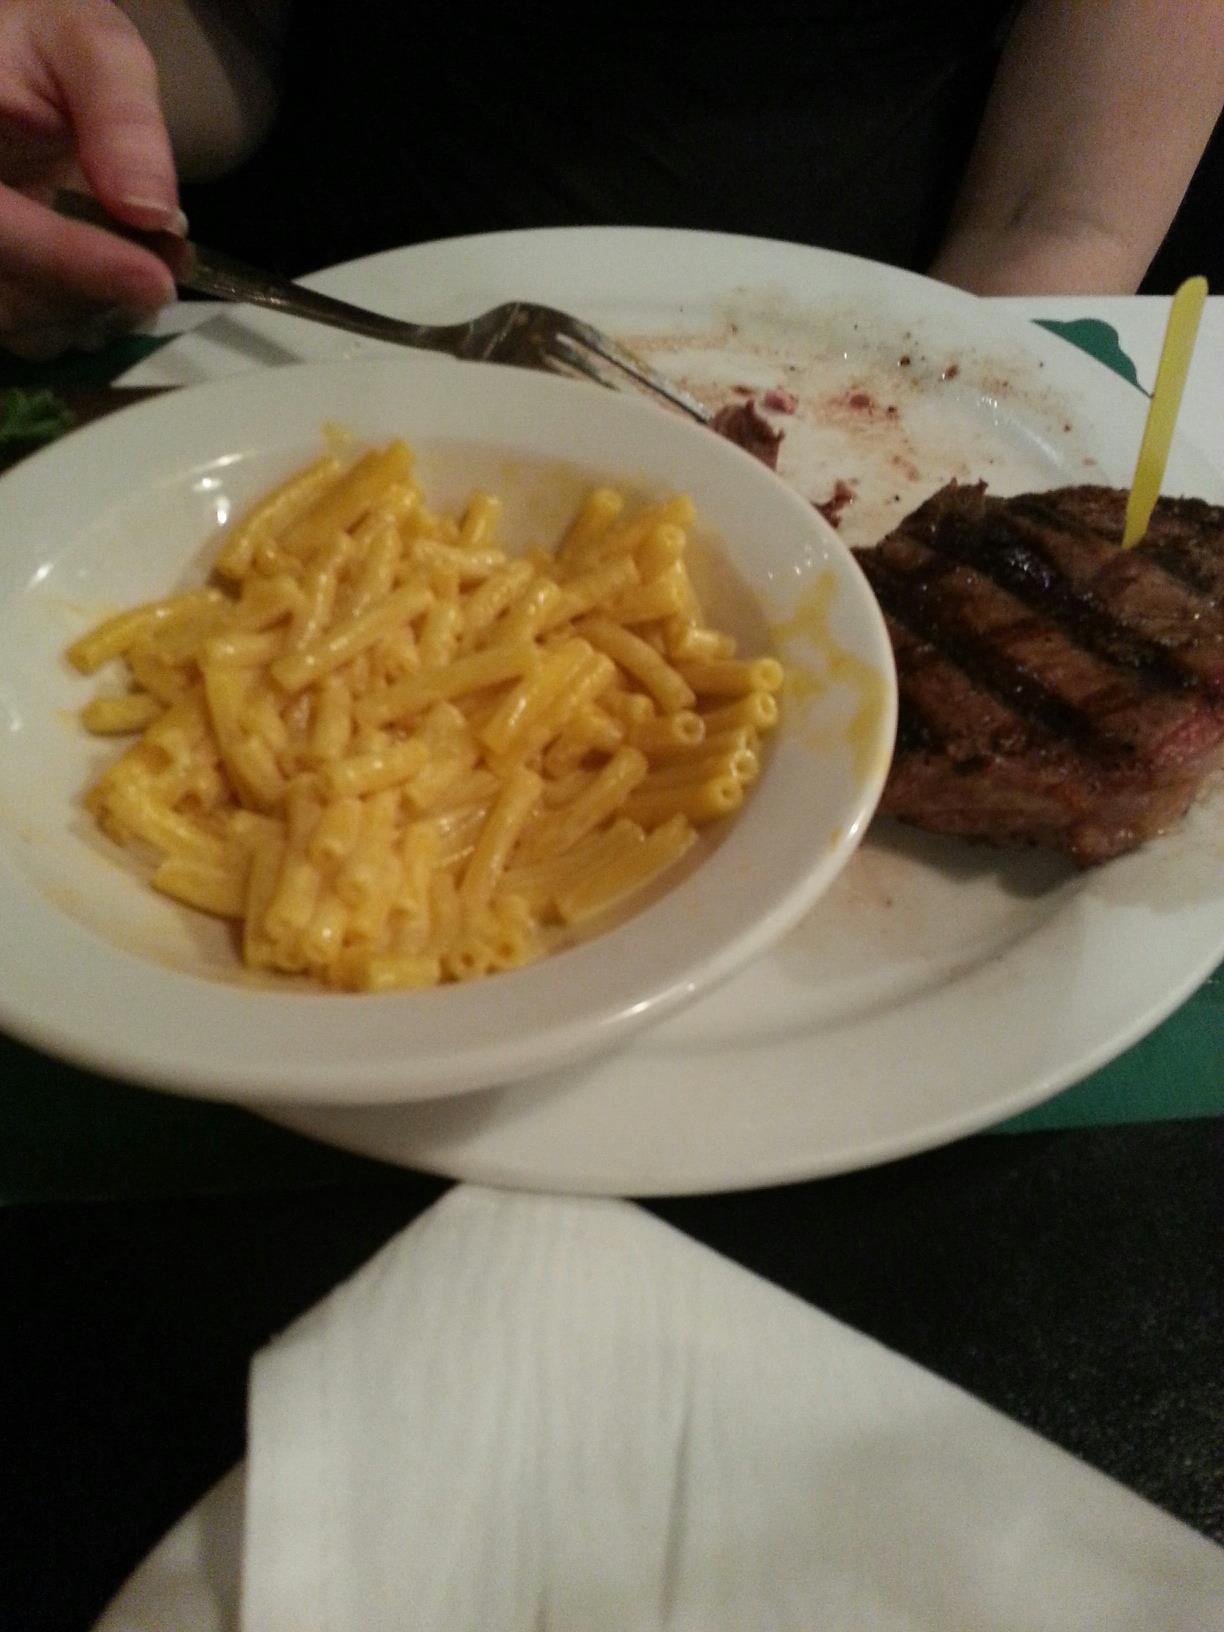 J’ai commandé un steak et des macaronis au fromage dans un restaurant de riverside pour 30 $. Ils ont apporté des macaronis au fromage kraft.